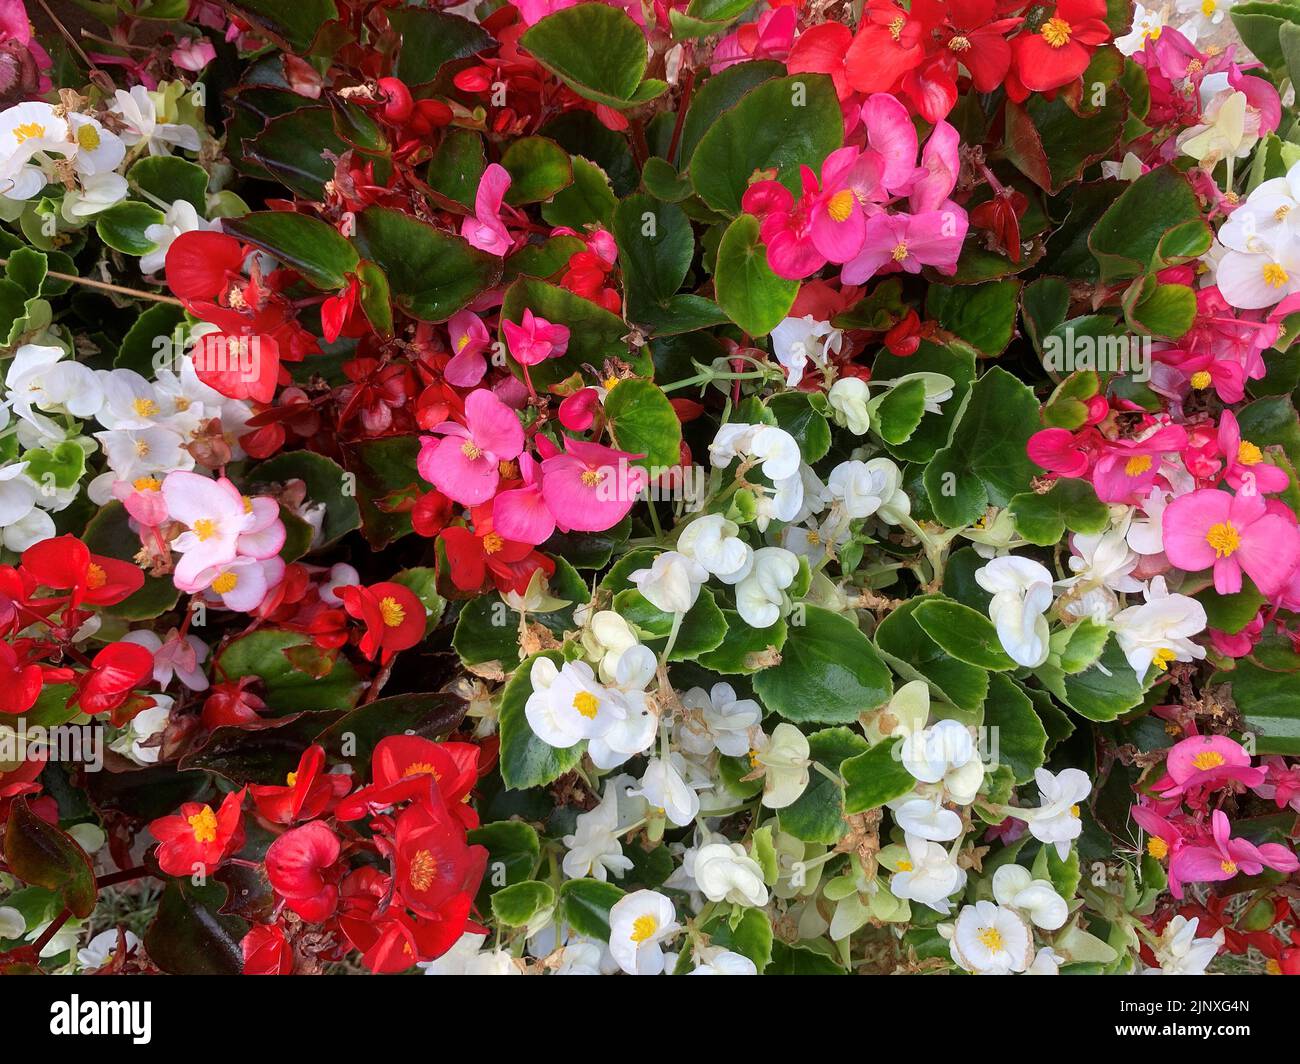 Nahaufnahme der Blumen der jährlichen Gartenpflanze Begonia sempervirens im Sommer gesehen. Stockfoto